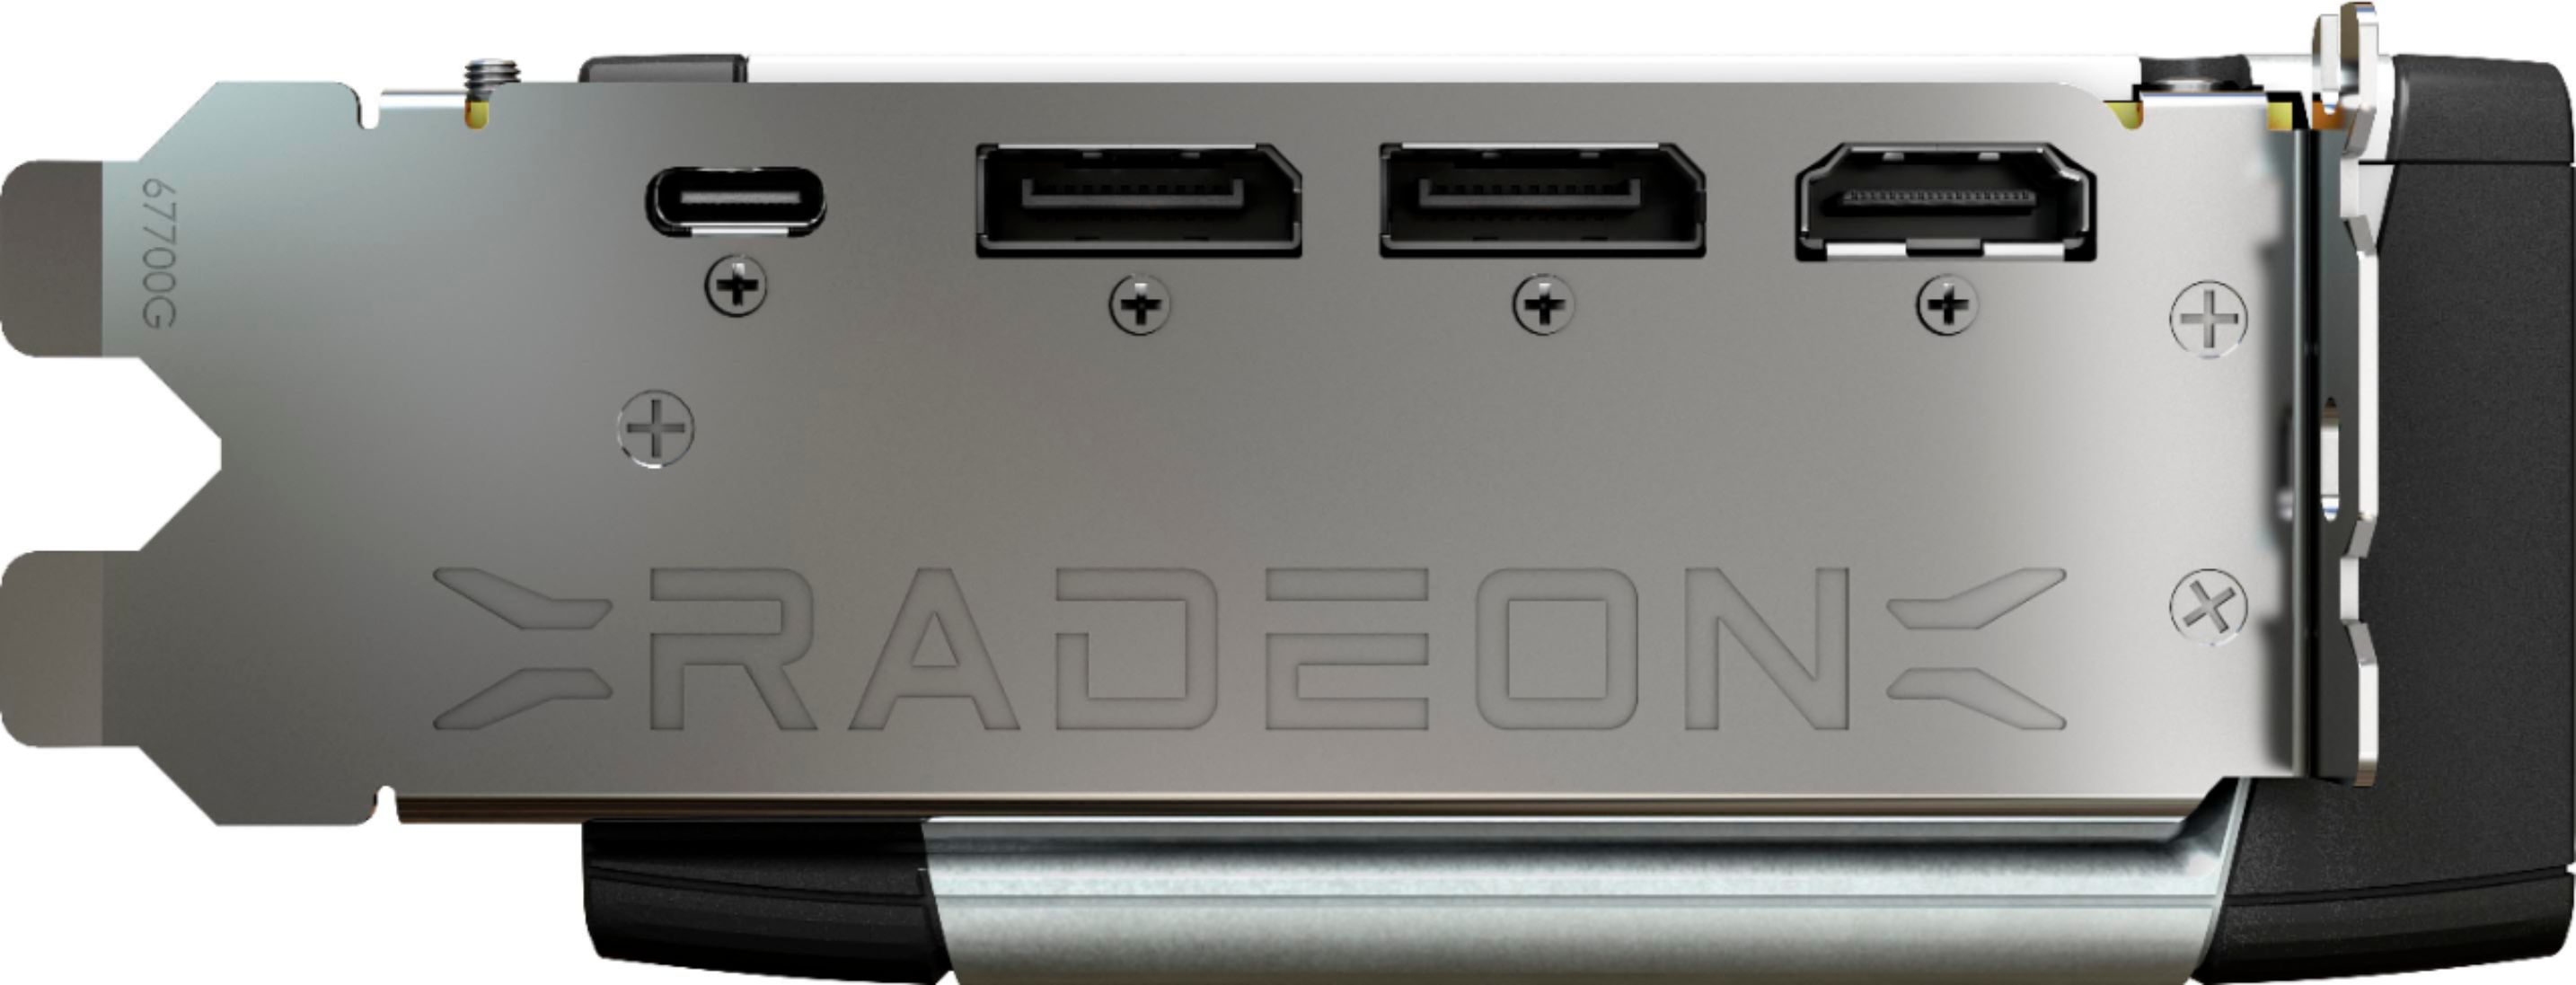 Radeon™ RX 6800 XT 16G Key Features